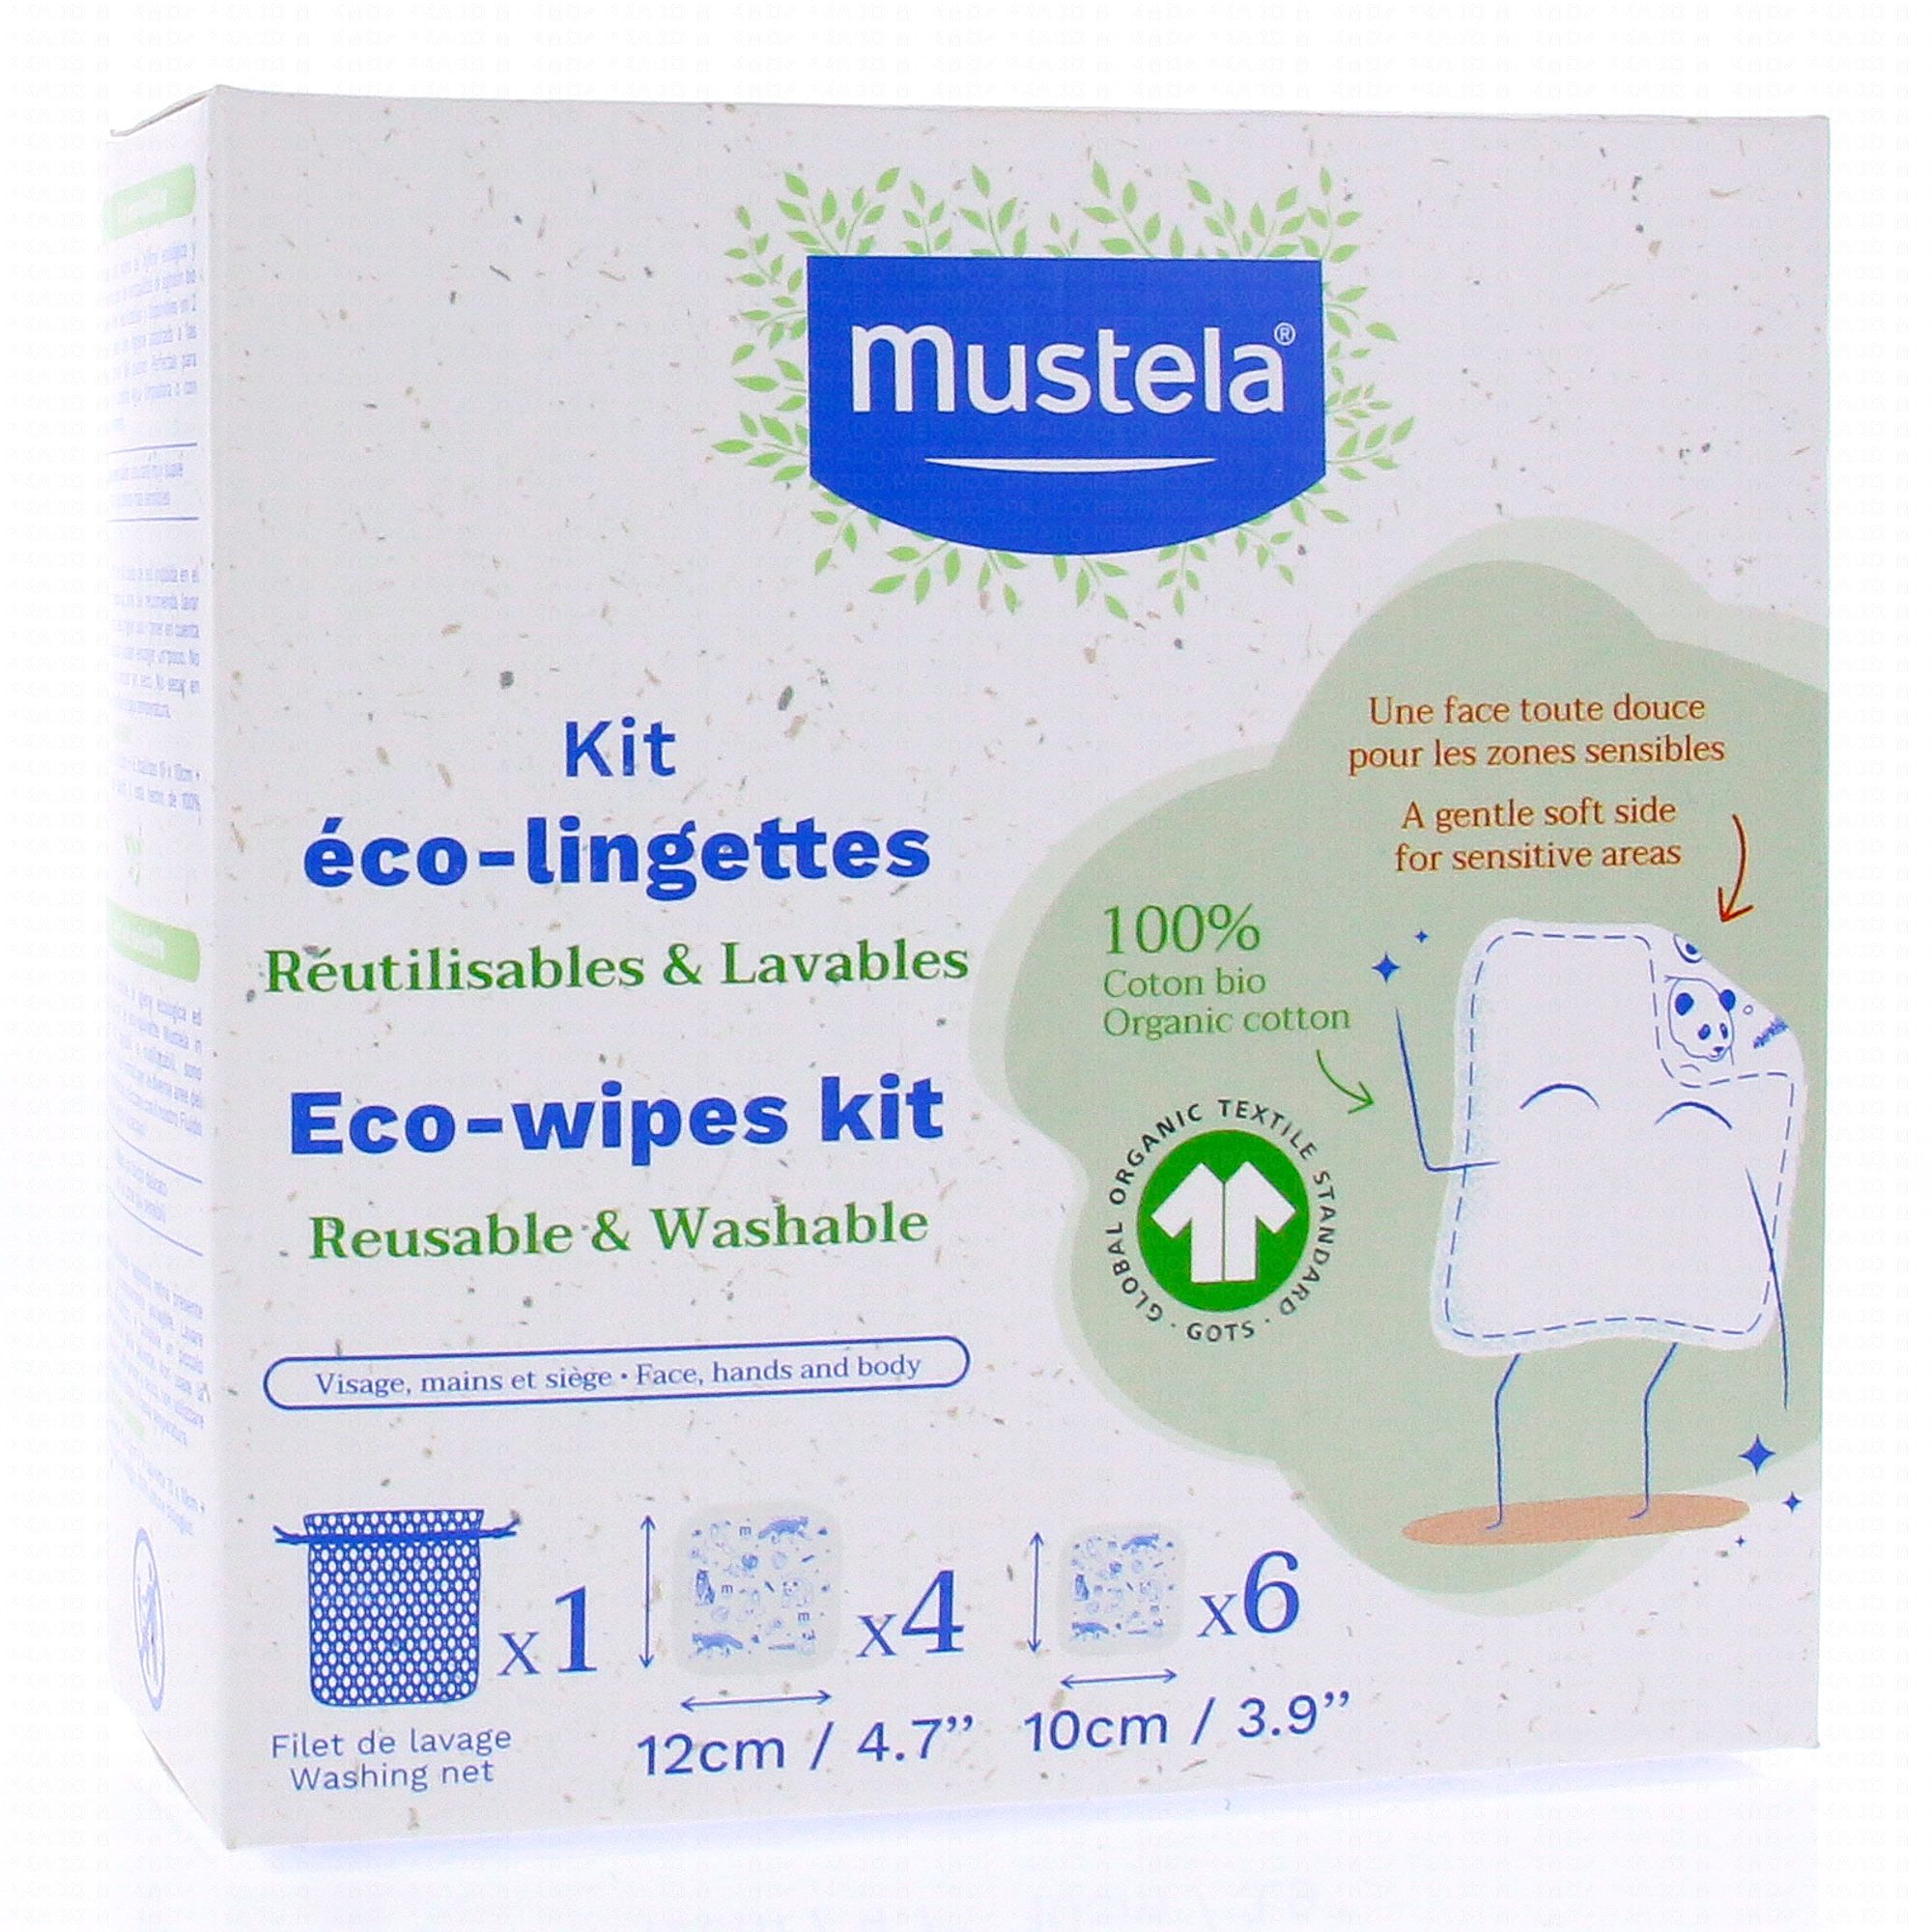 MUSTELA Kit éco-lingettes réutilisables et lavables - Parapharmacie Prado  Mermoz